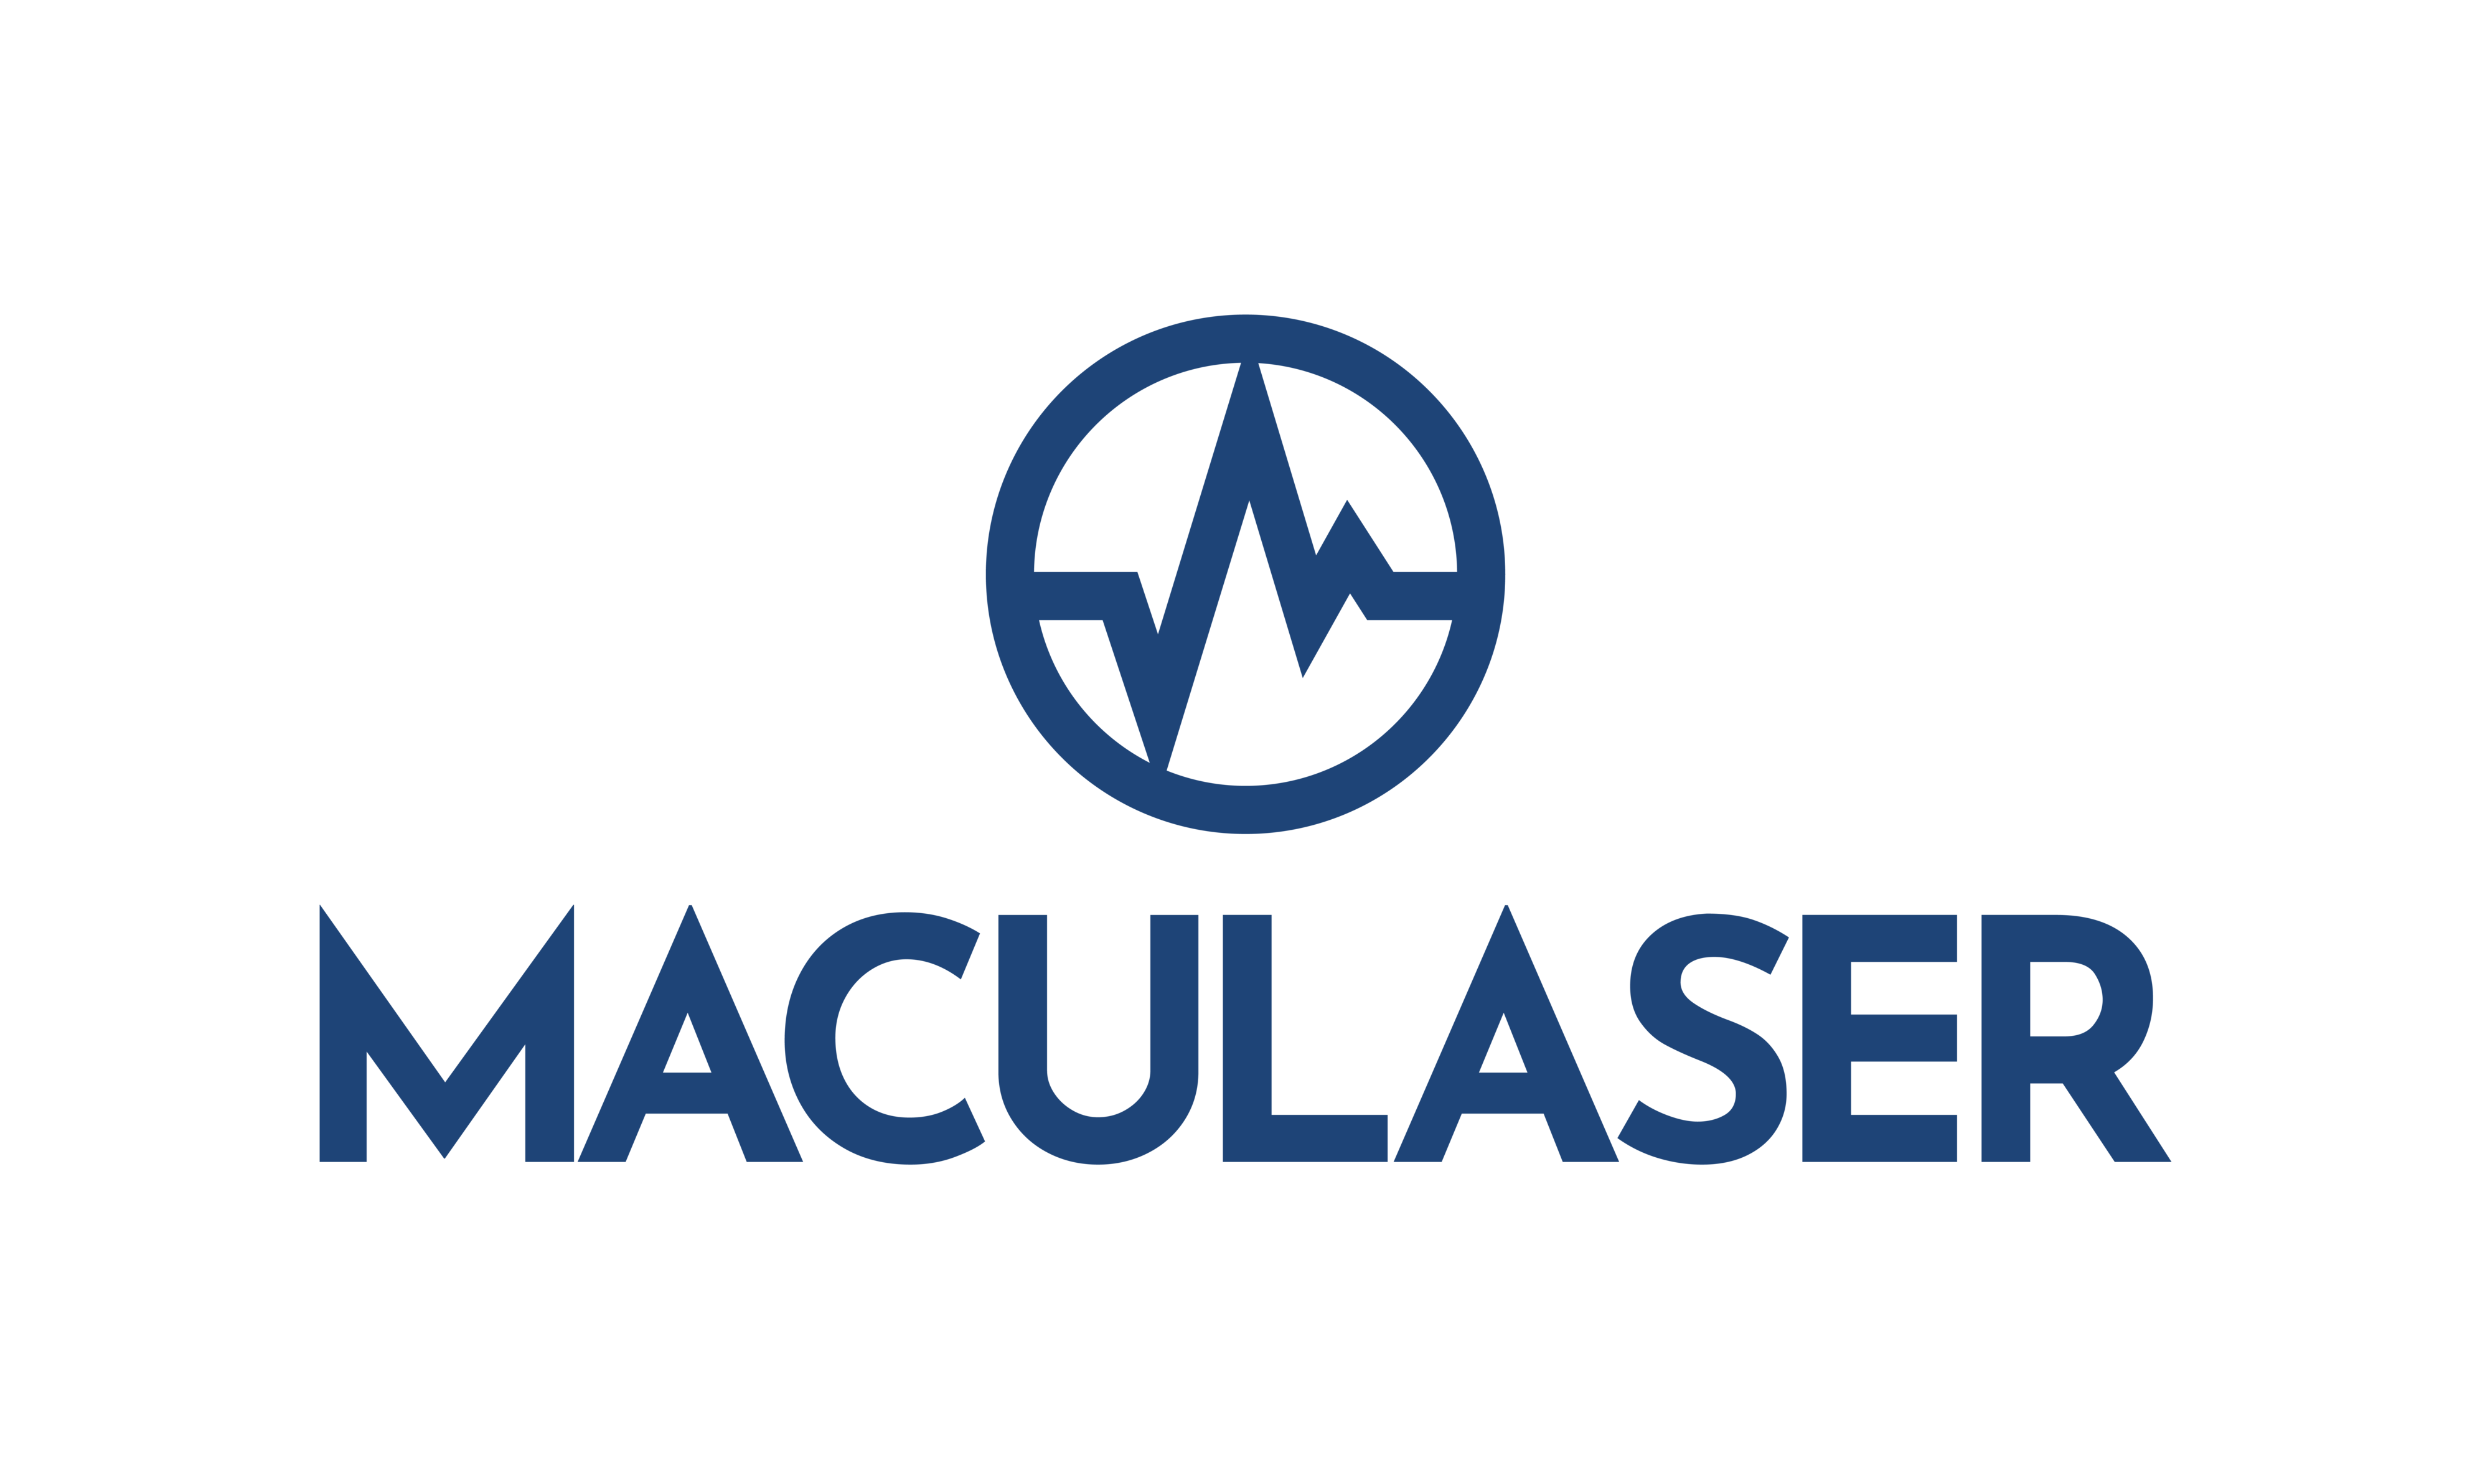 Maculaser's logo